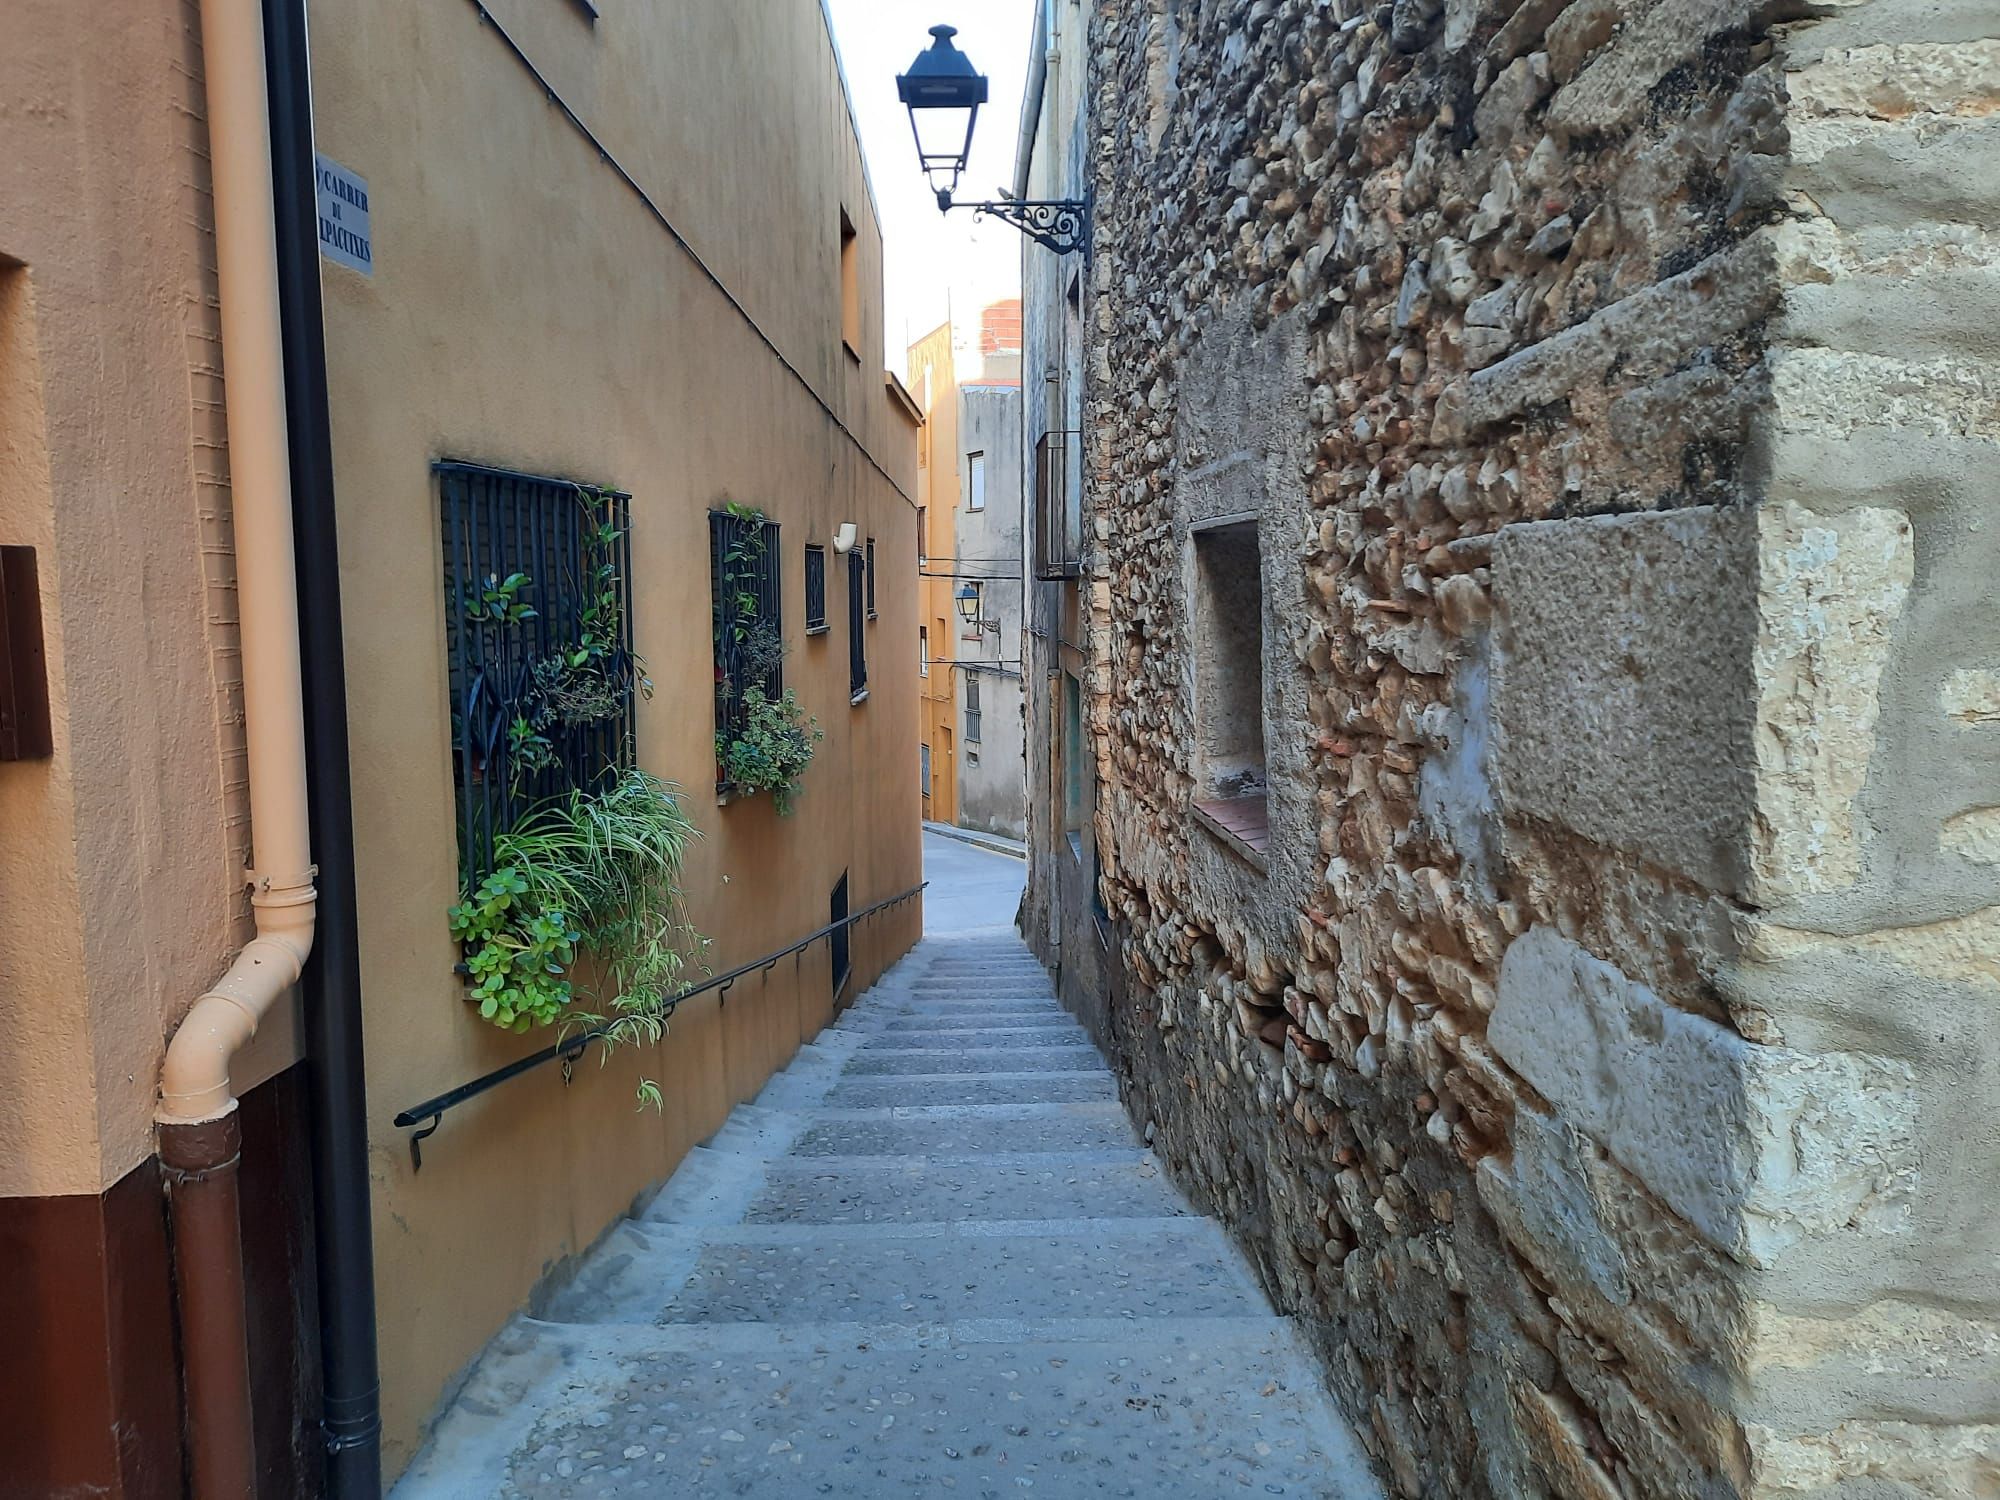 Calle Palpacuixes, Sant Mateu